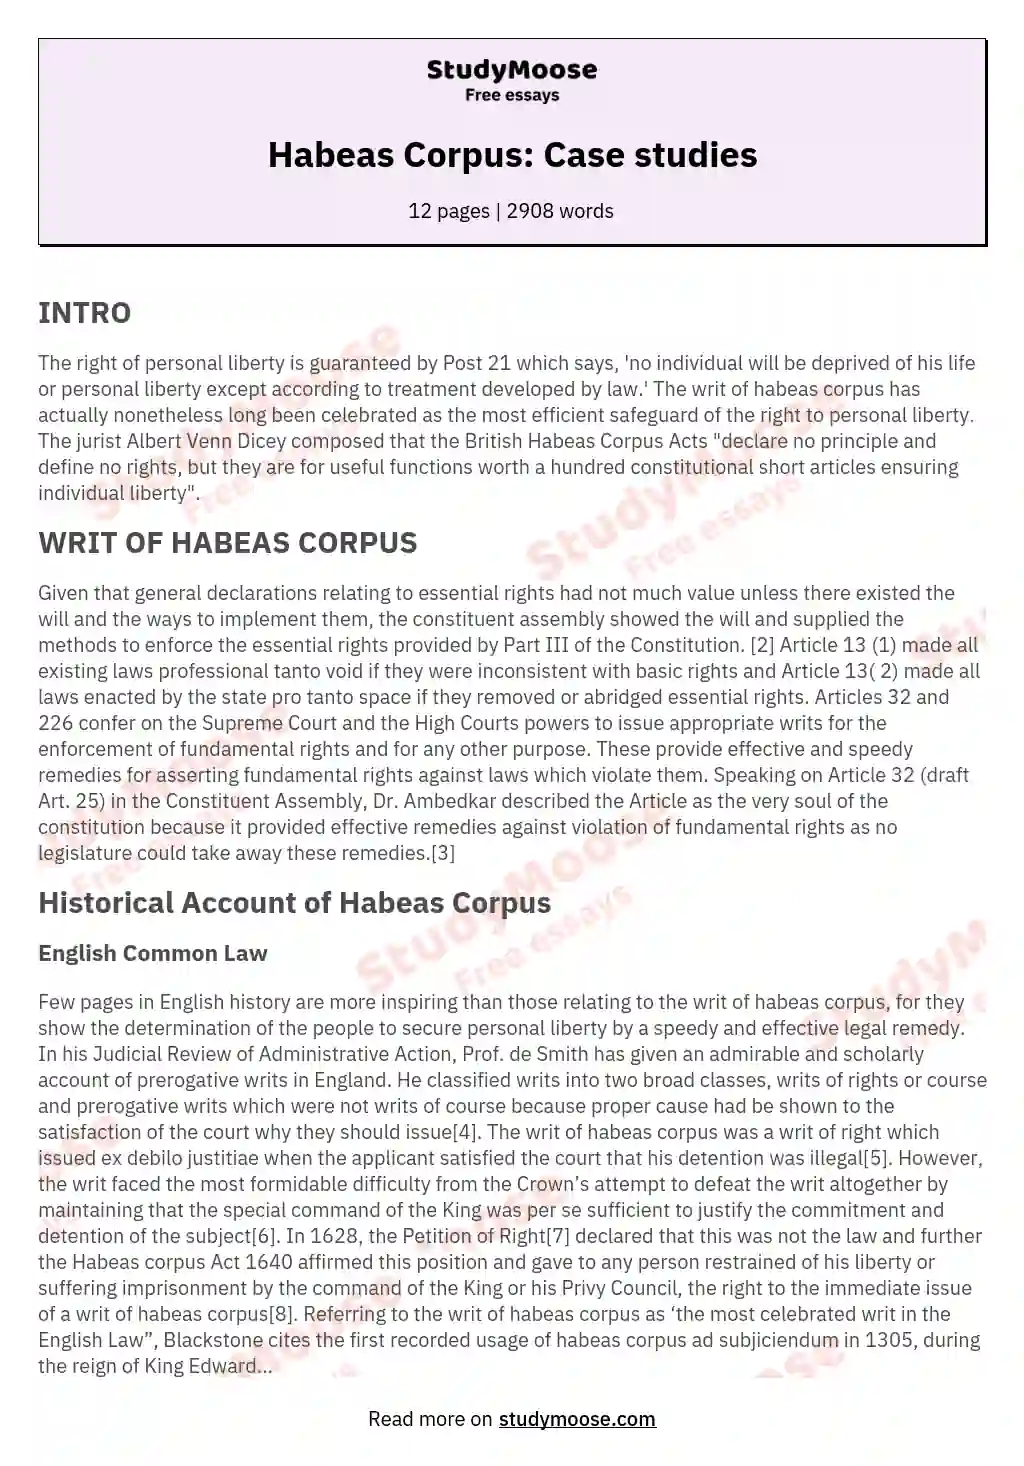 Habeas Corpus: Case studies essay